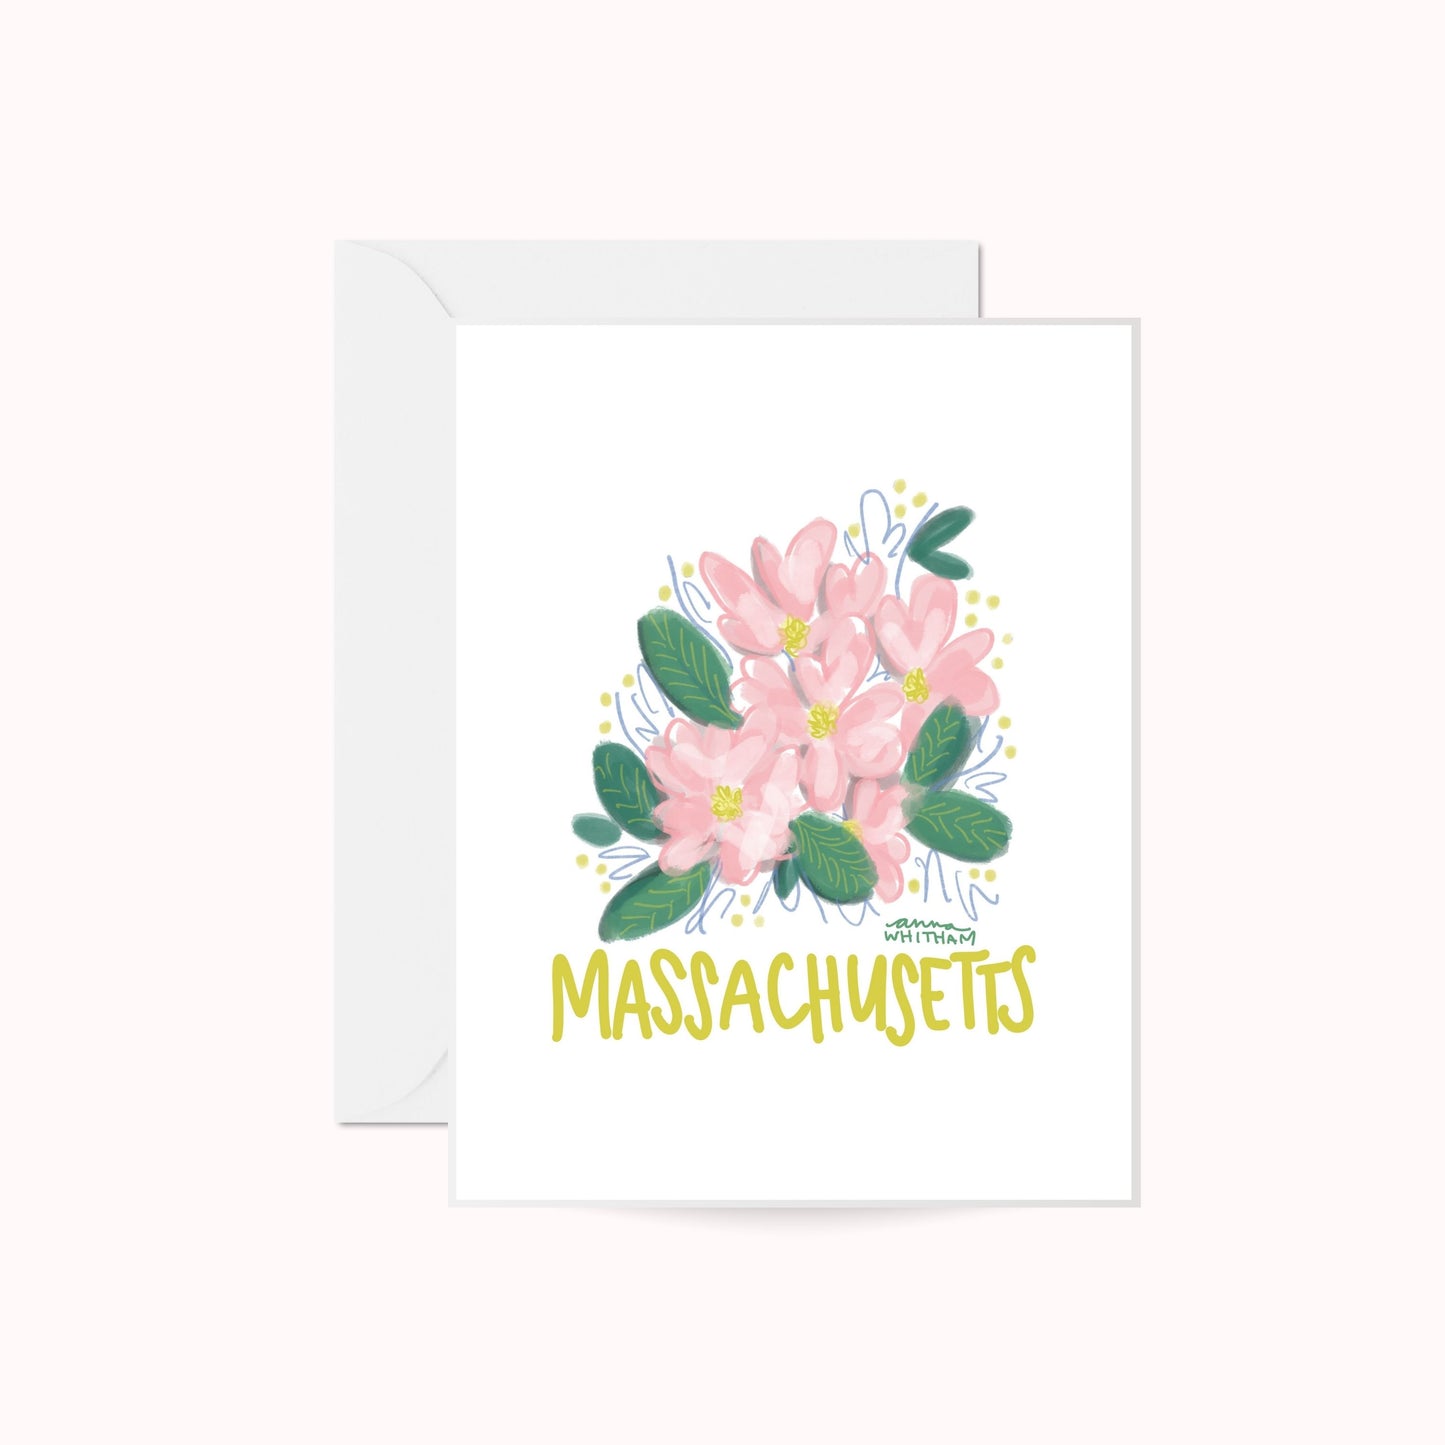 Massachusetts Mayflower Greeting Card